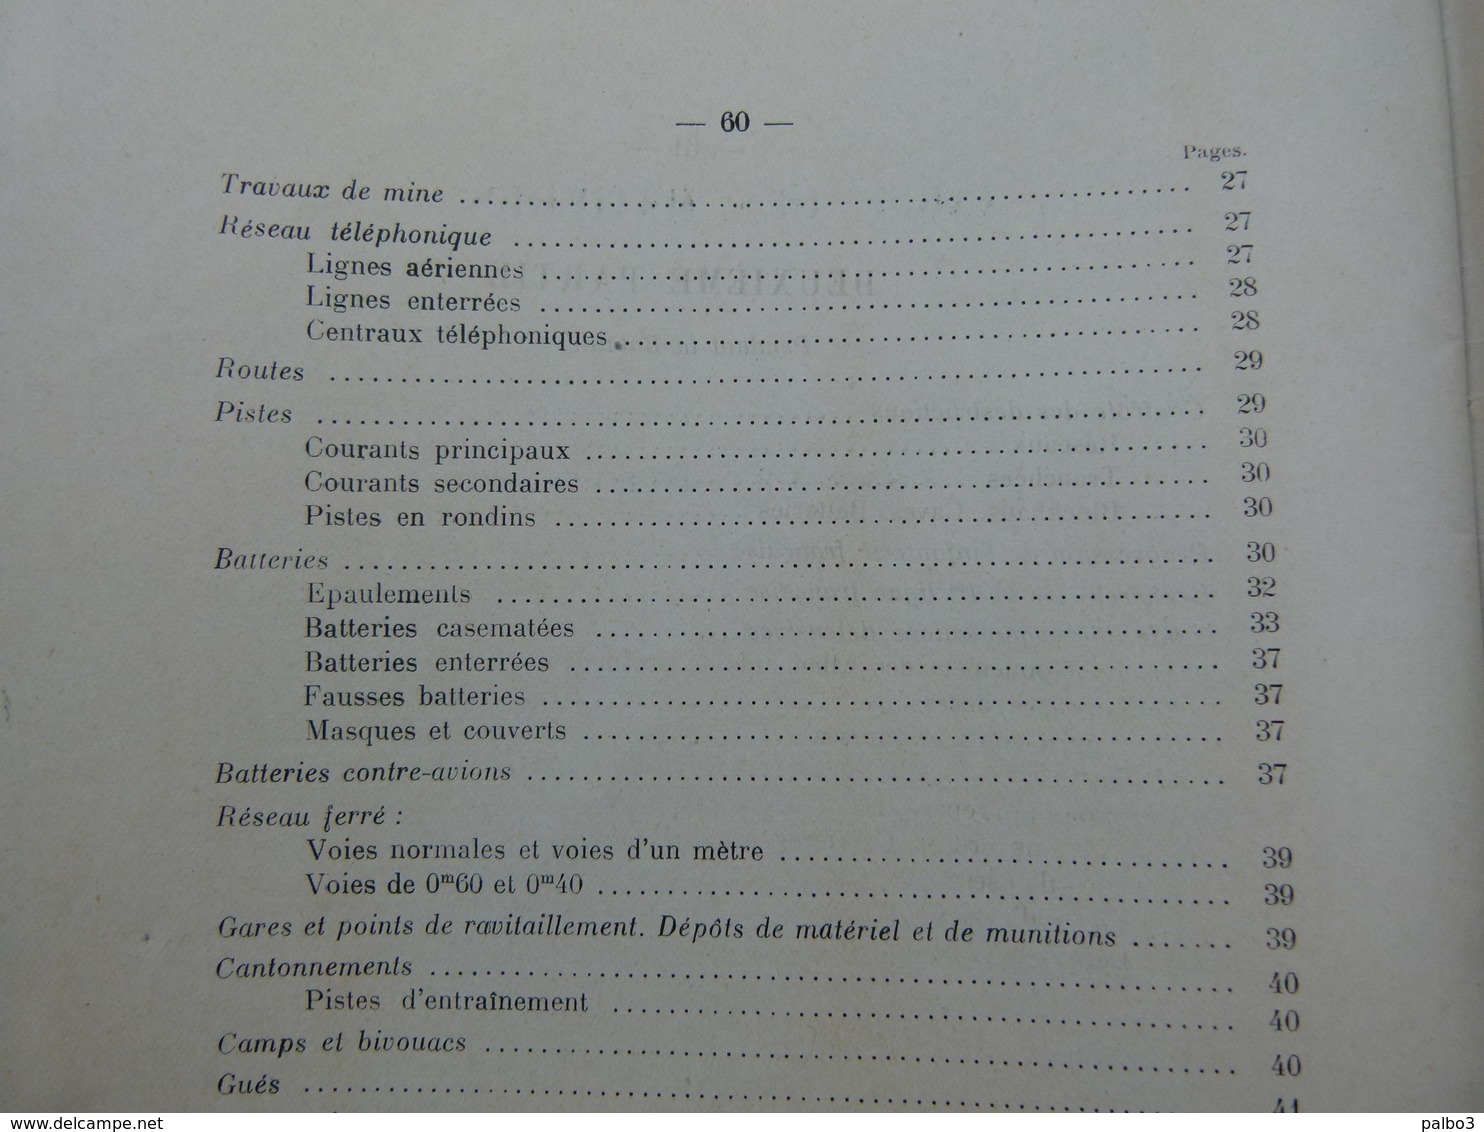 SECRET Rare Manuel Livre etat major Notes sur l'interprétations des Photographies Aeriennes 1916